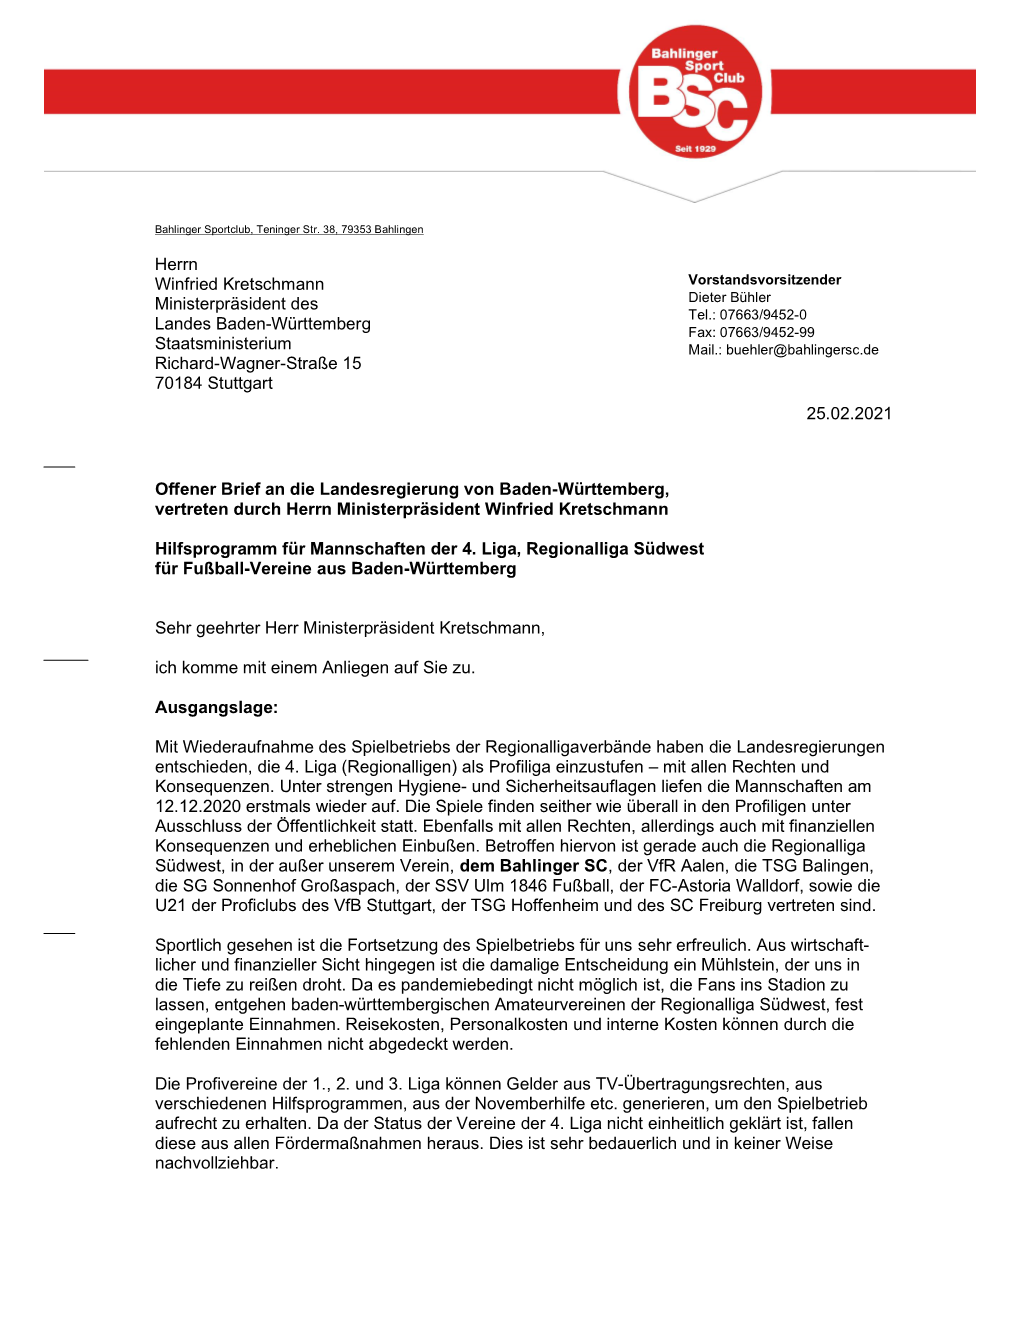 Offener Brief an Die Landesregierung Von Baden-Württemberg, Vertreten Durch Herrn Ministerpräsident Winfried Kretschmann